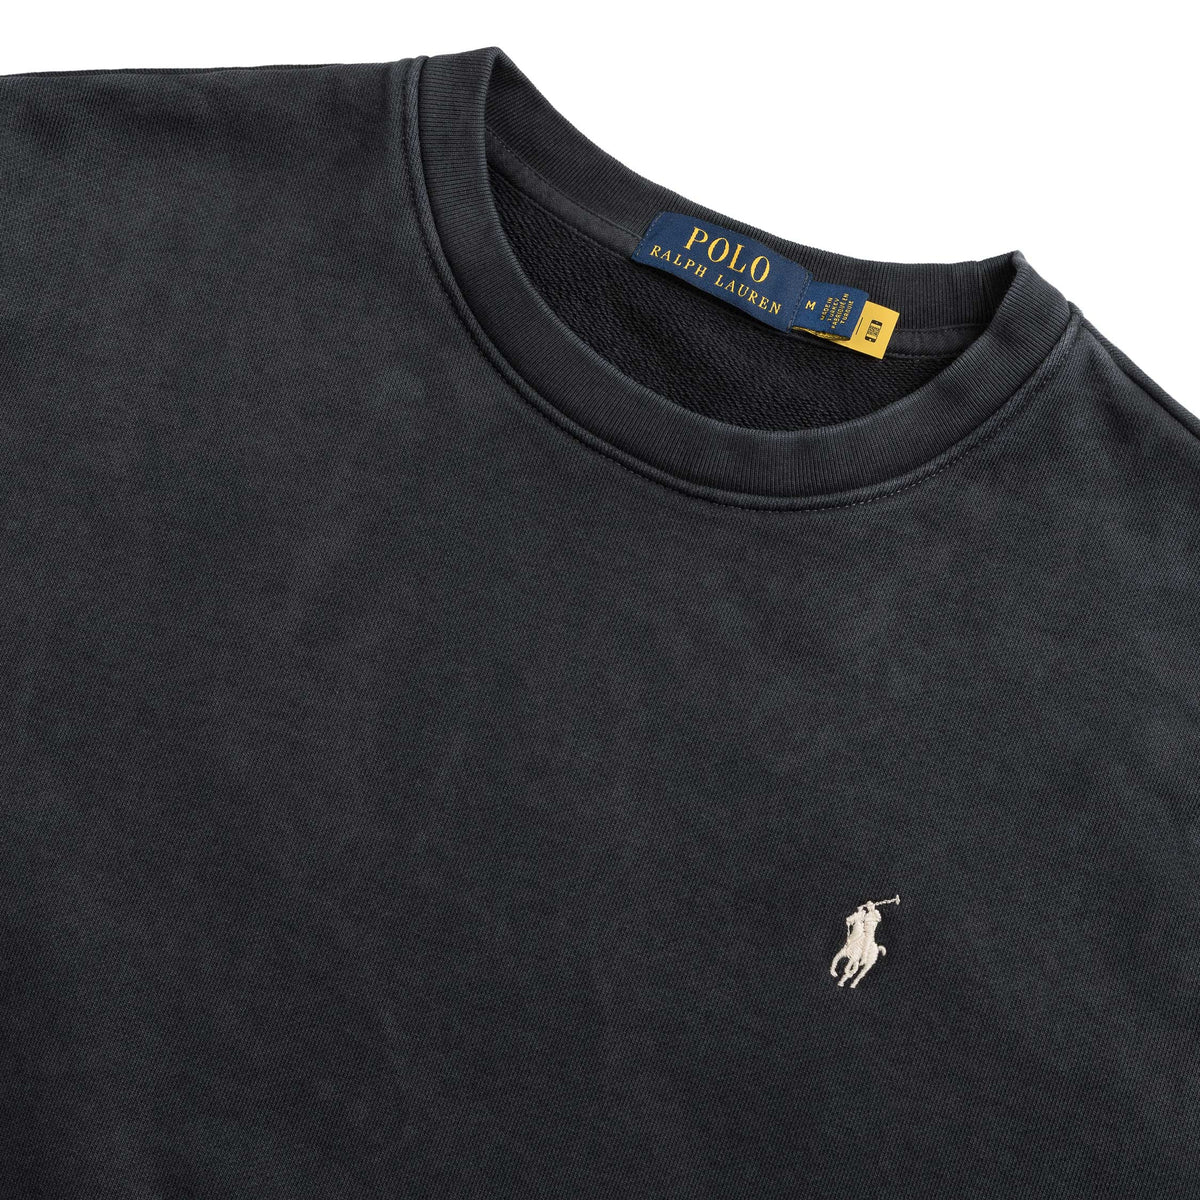 Polo Ralph Lauren Loopback Fleece Sweatshirt – buy now at Asphaltgold ...